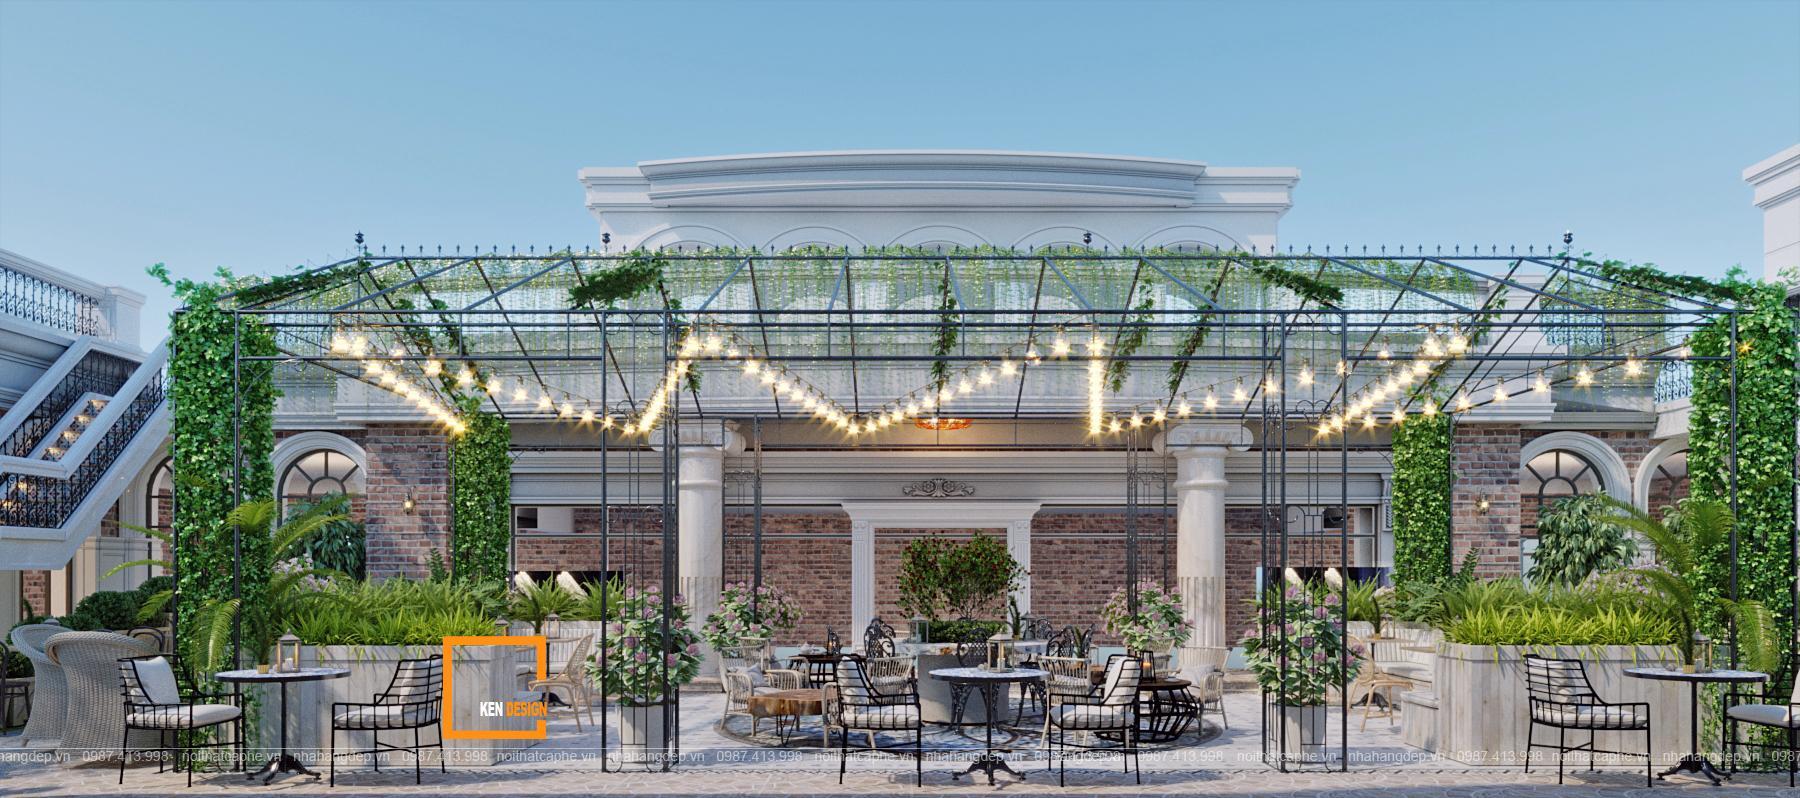 Thiết kế quán cà phê sân vườn kiến trúc tân cổ điển giúp bạn thoả sức khám phá phong cách của thời đại cổ điển nhưng vẫn hiện đại và sang trọng. Hãy cùng tận hưởng không gian độc đáo và chất lượng tốt tại quán cà phê này.